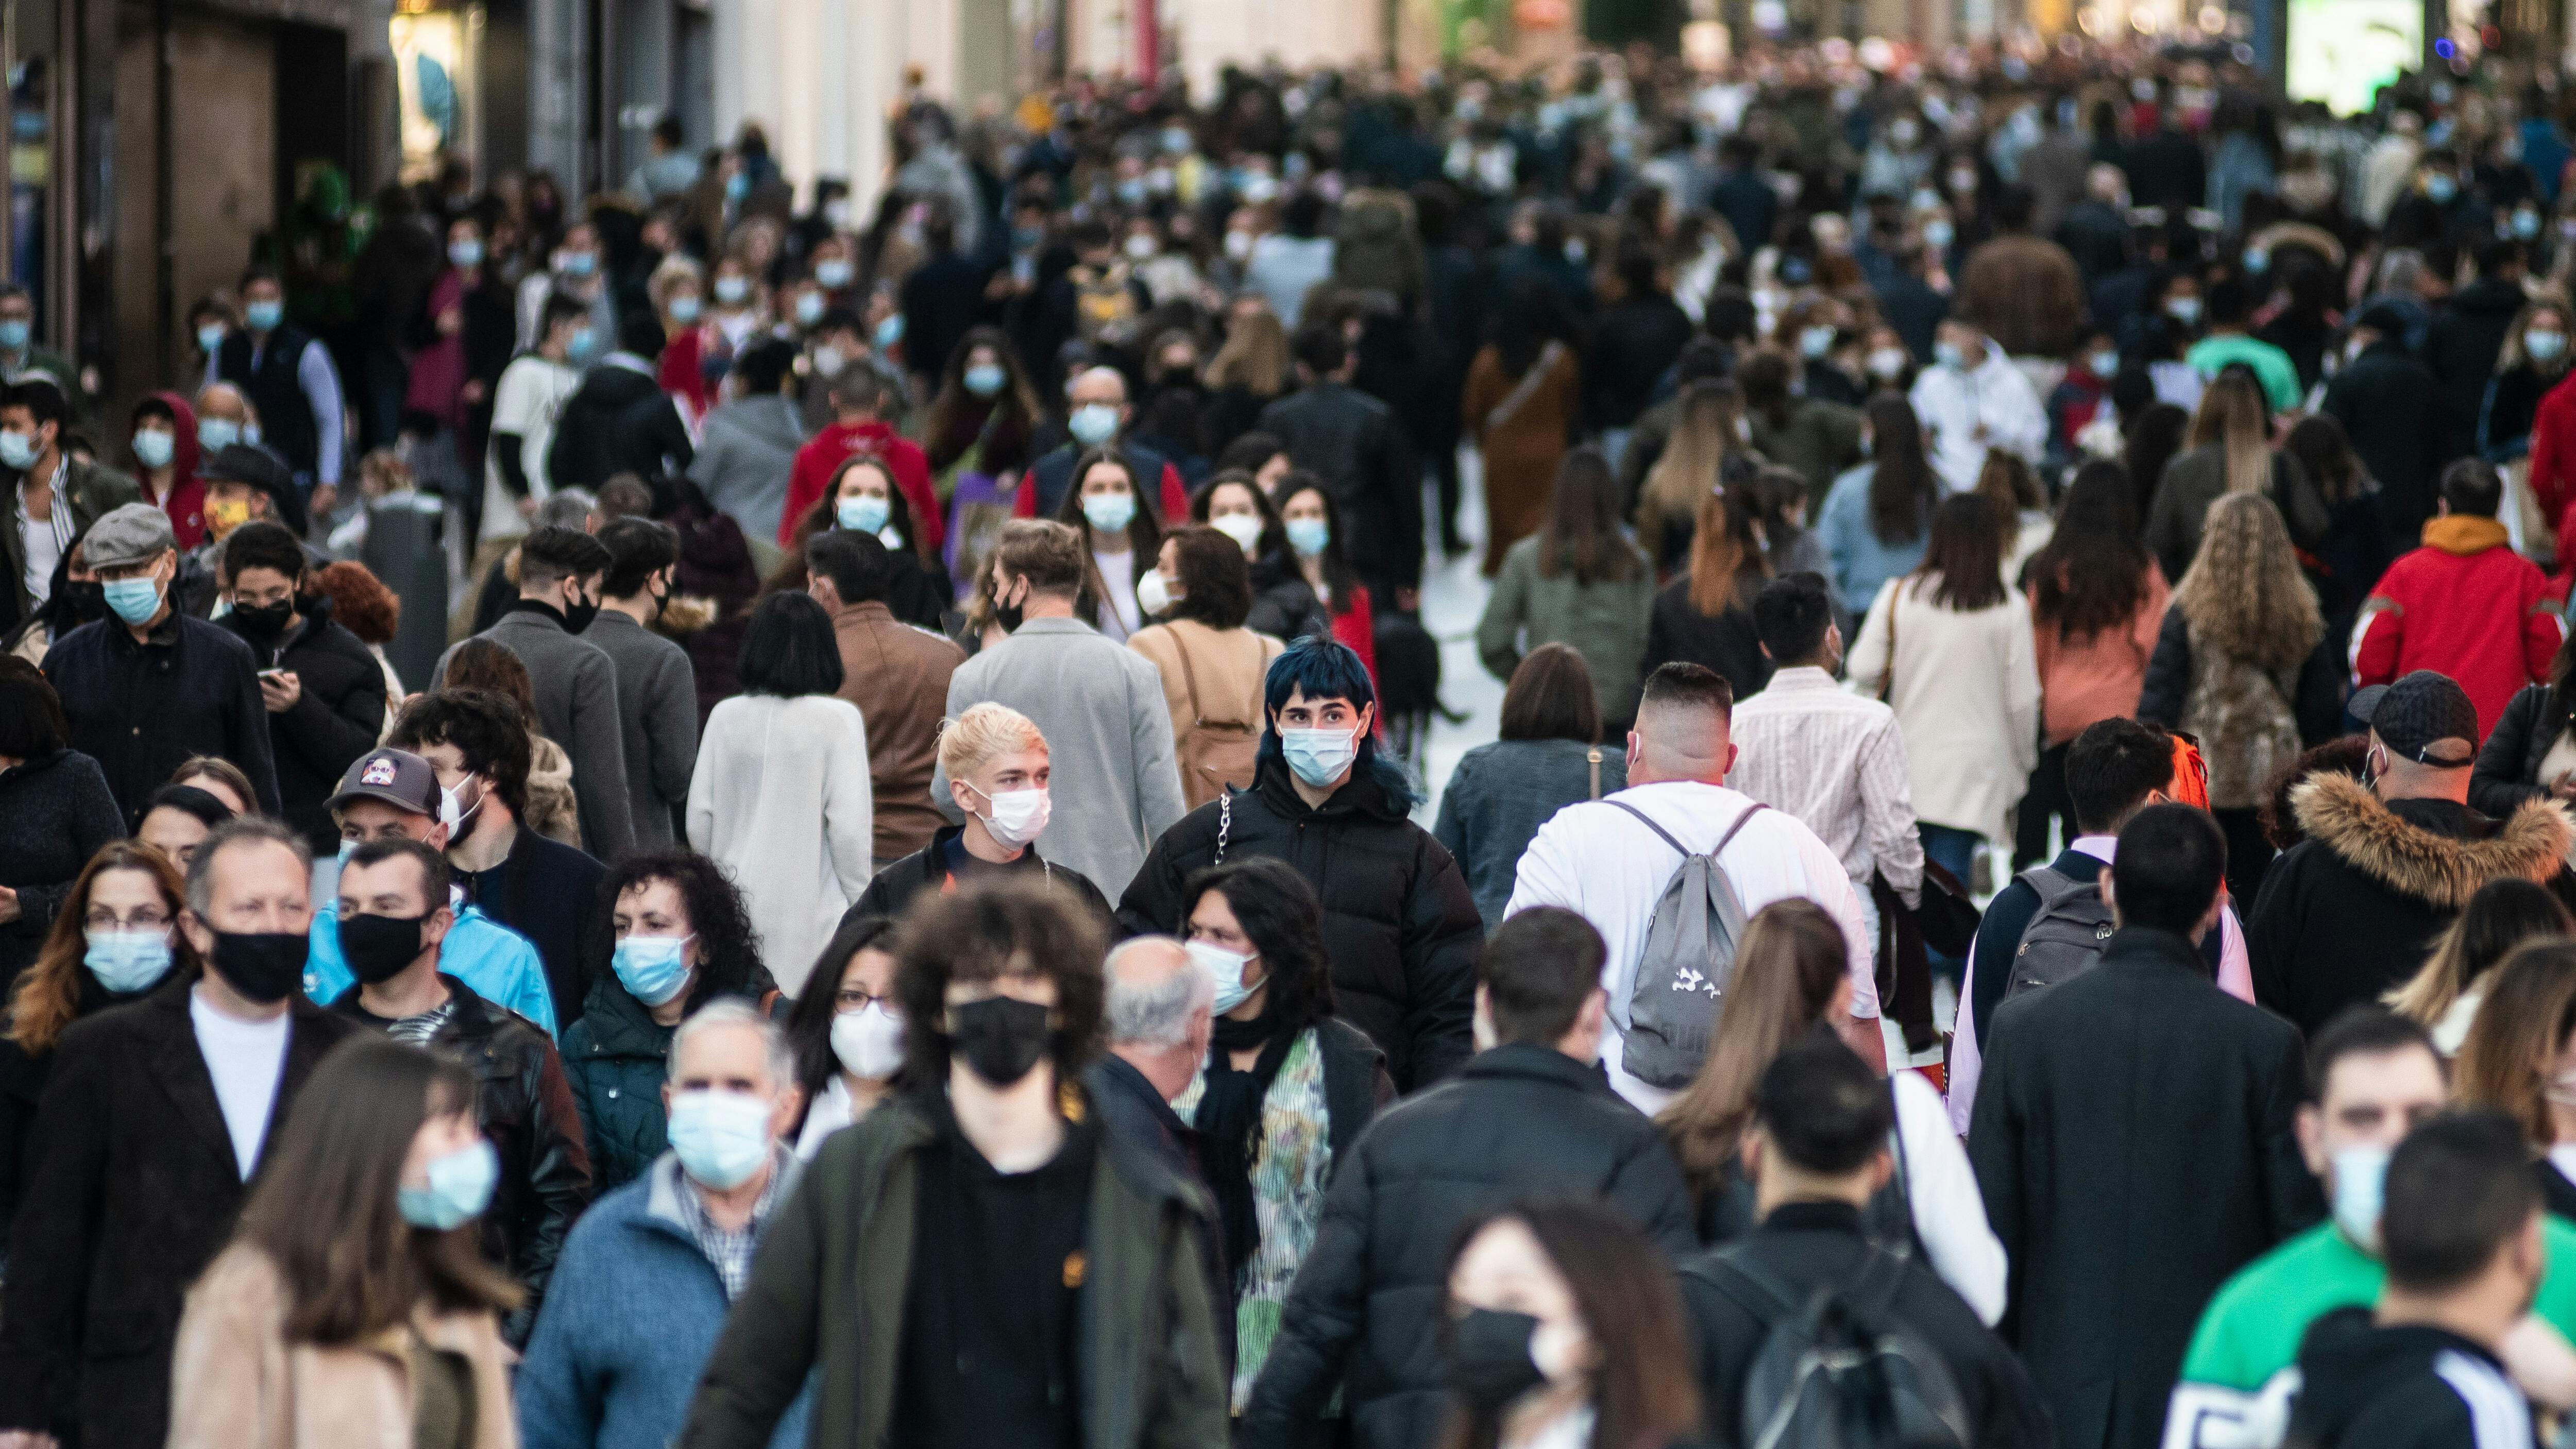 Menschenmengen mit Gesichtsmasken, um die Ausbreitung des Coronavirus zu stoppen, laufen durch die Innenstadt.